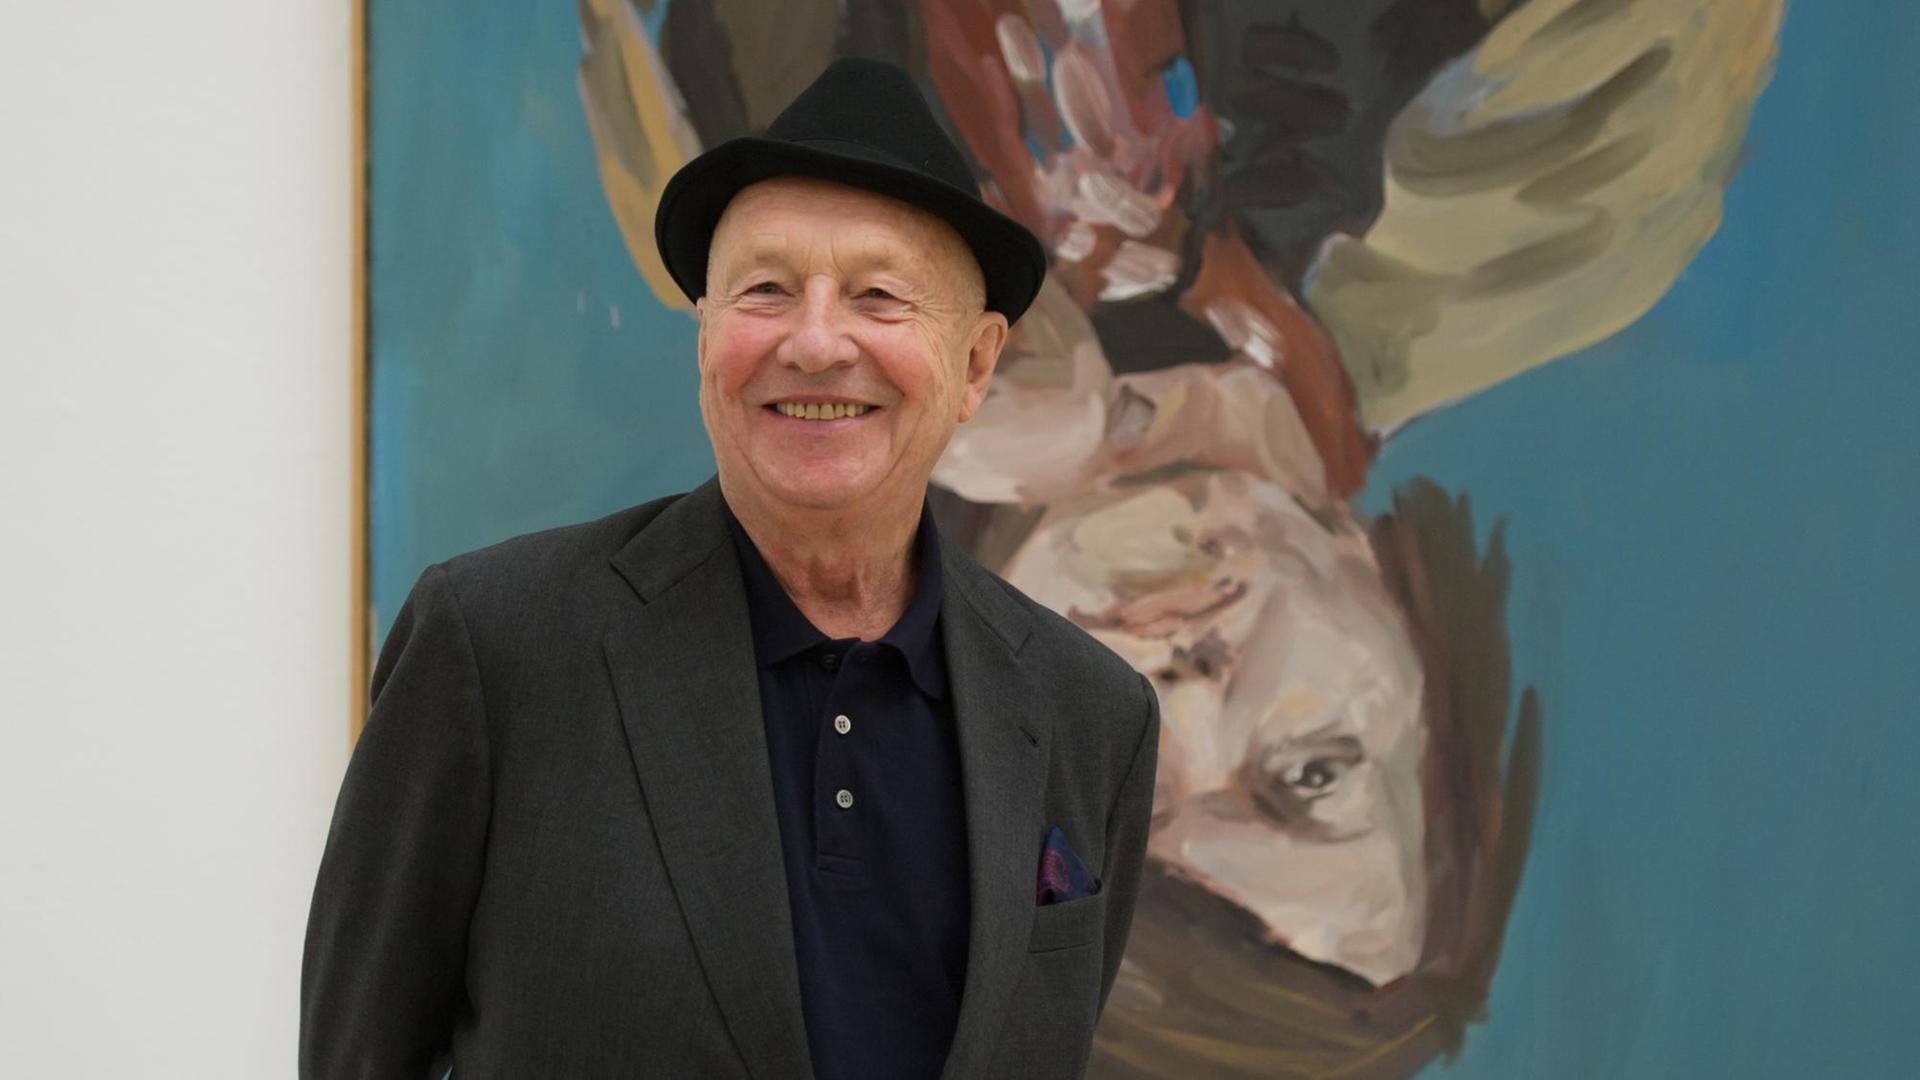 Der Künstler Georg Baselitz steht vor einem Porträt seiner Frau.